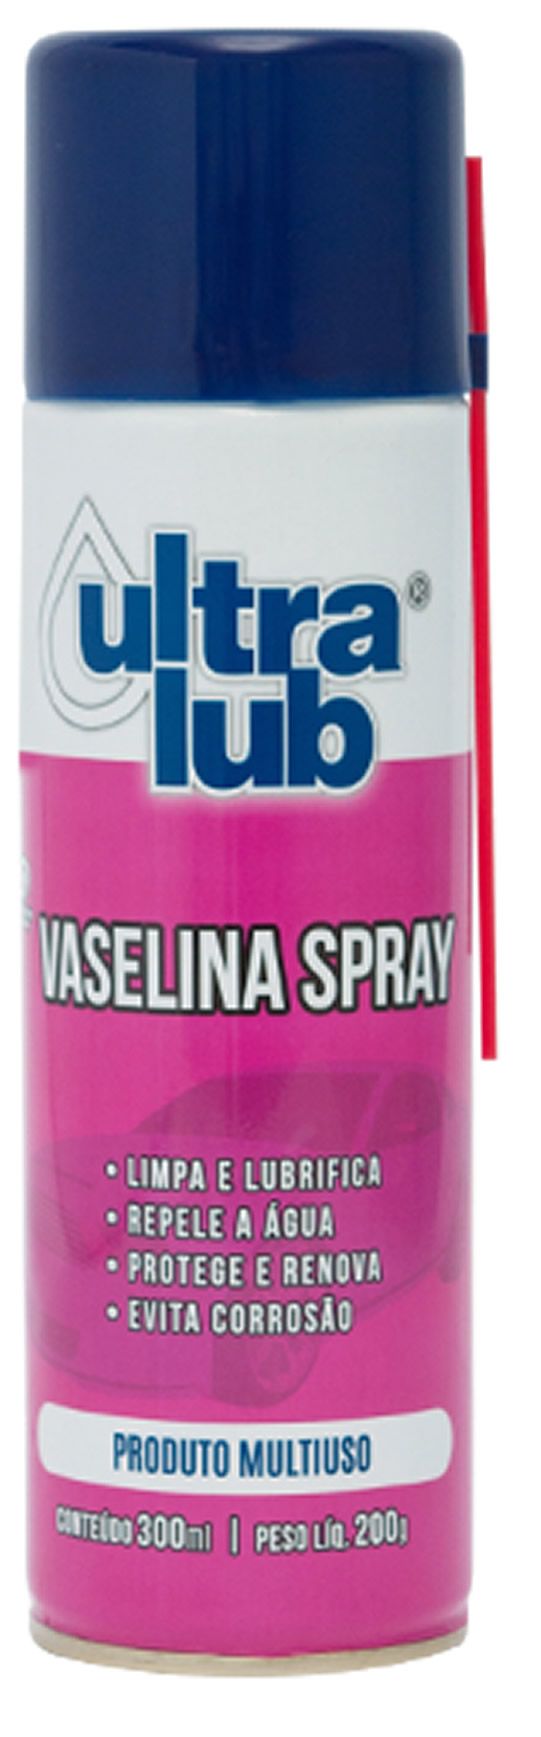 Vaselina Spray